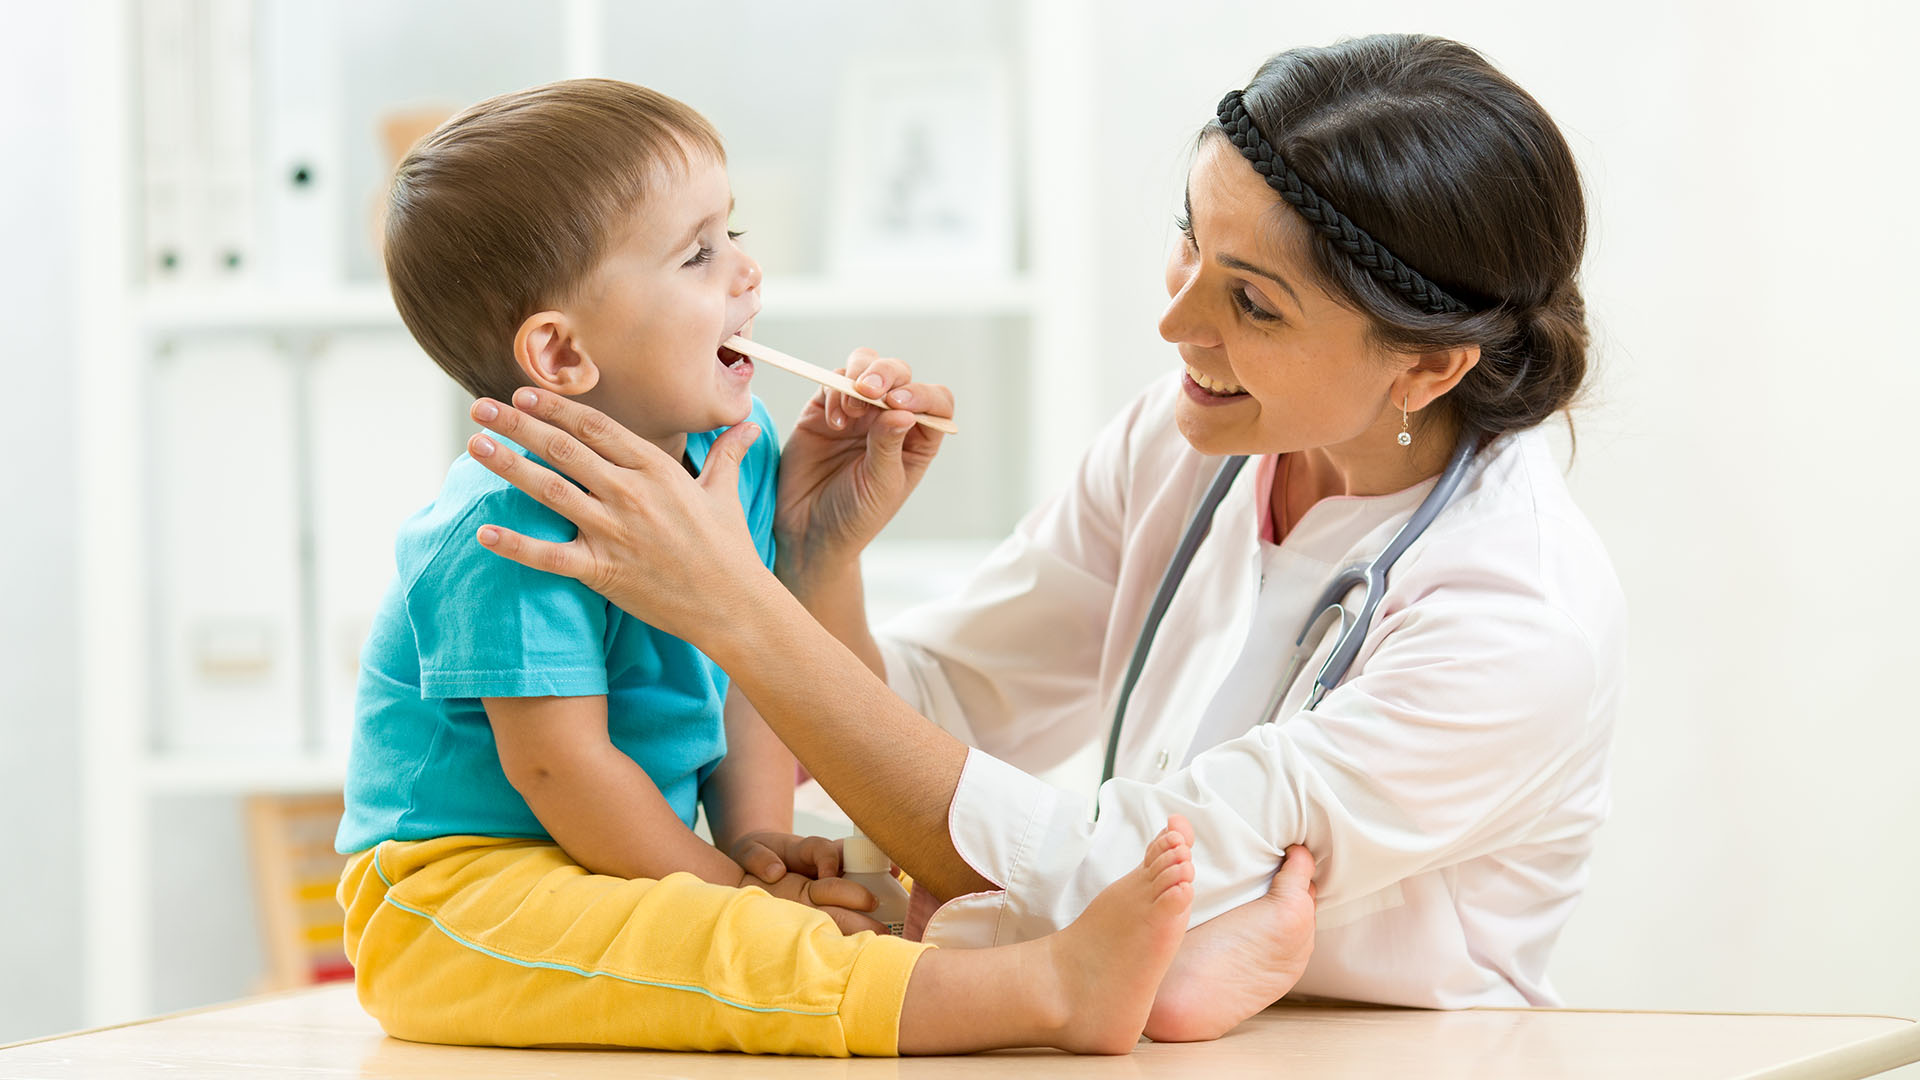 Los pediatras observan con preocupación la baja en la atención de pacientes sanos como con problemas de salud (Shutterstock)